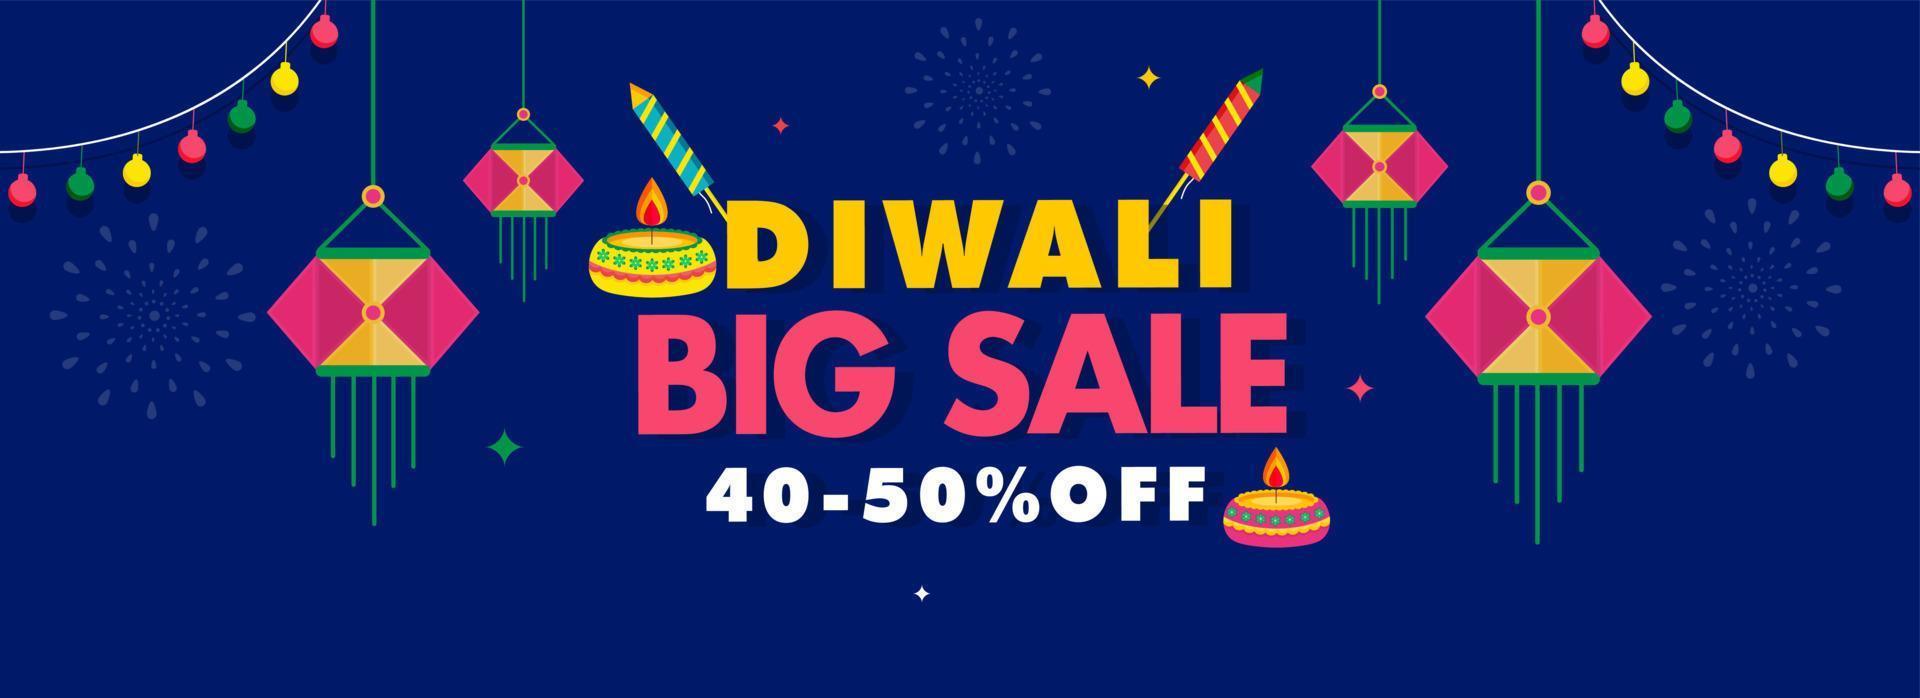 Diwali groß Verkauf Header oder Banner Design mit Rabatt Angebot, zündete Öl Lampen Raketen, hängend Laternen und Beleuchtung Girlande auf Blau Hintergrund. vektor